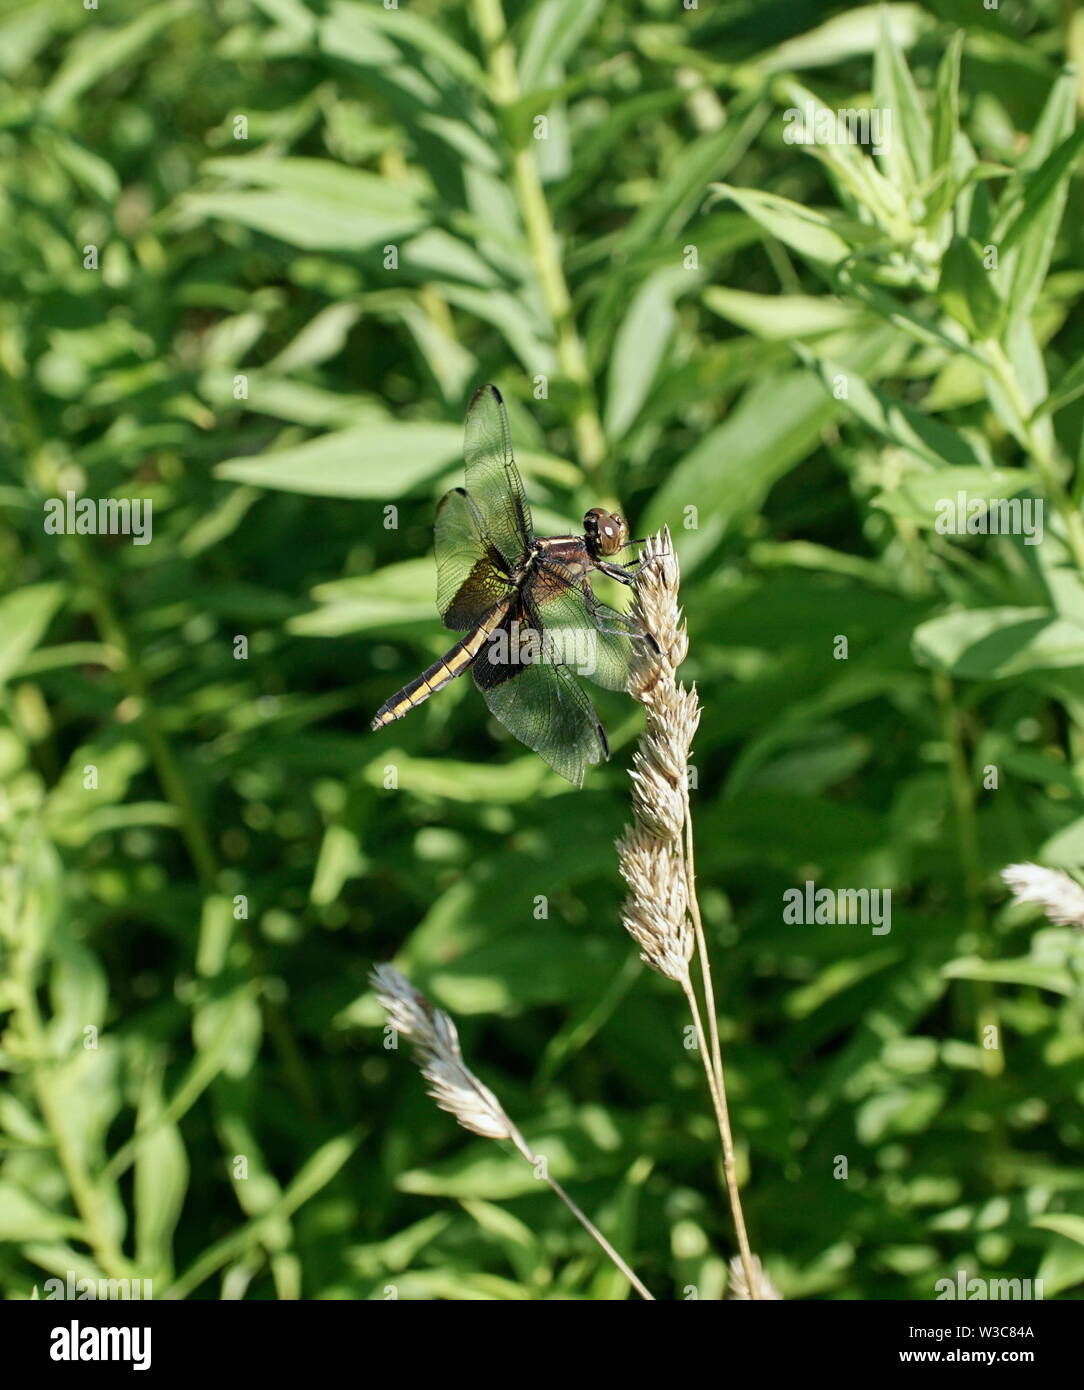 Alforjas negro dragonfly en reposo Foto de stock